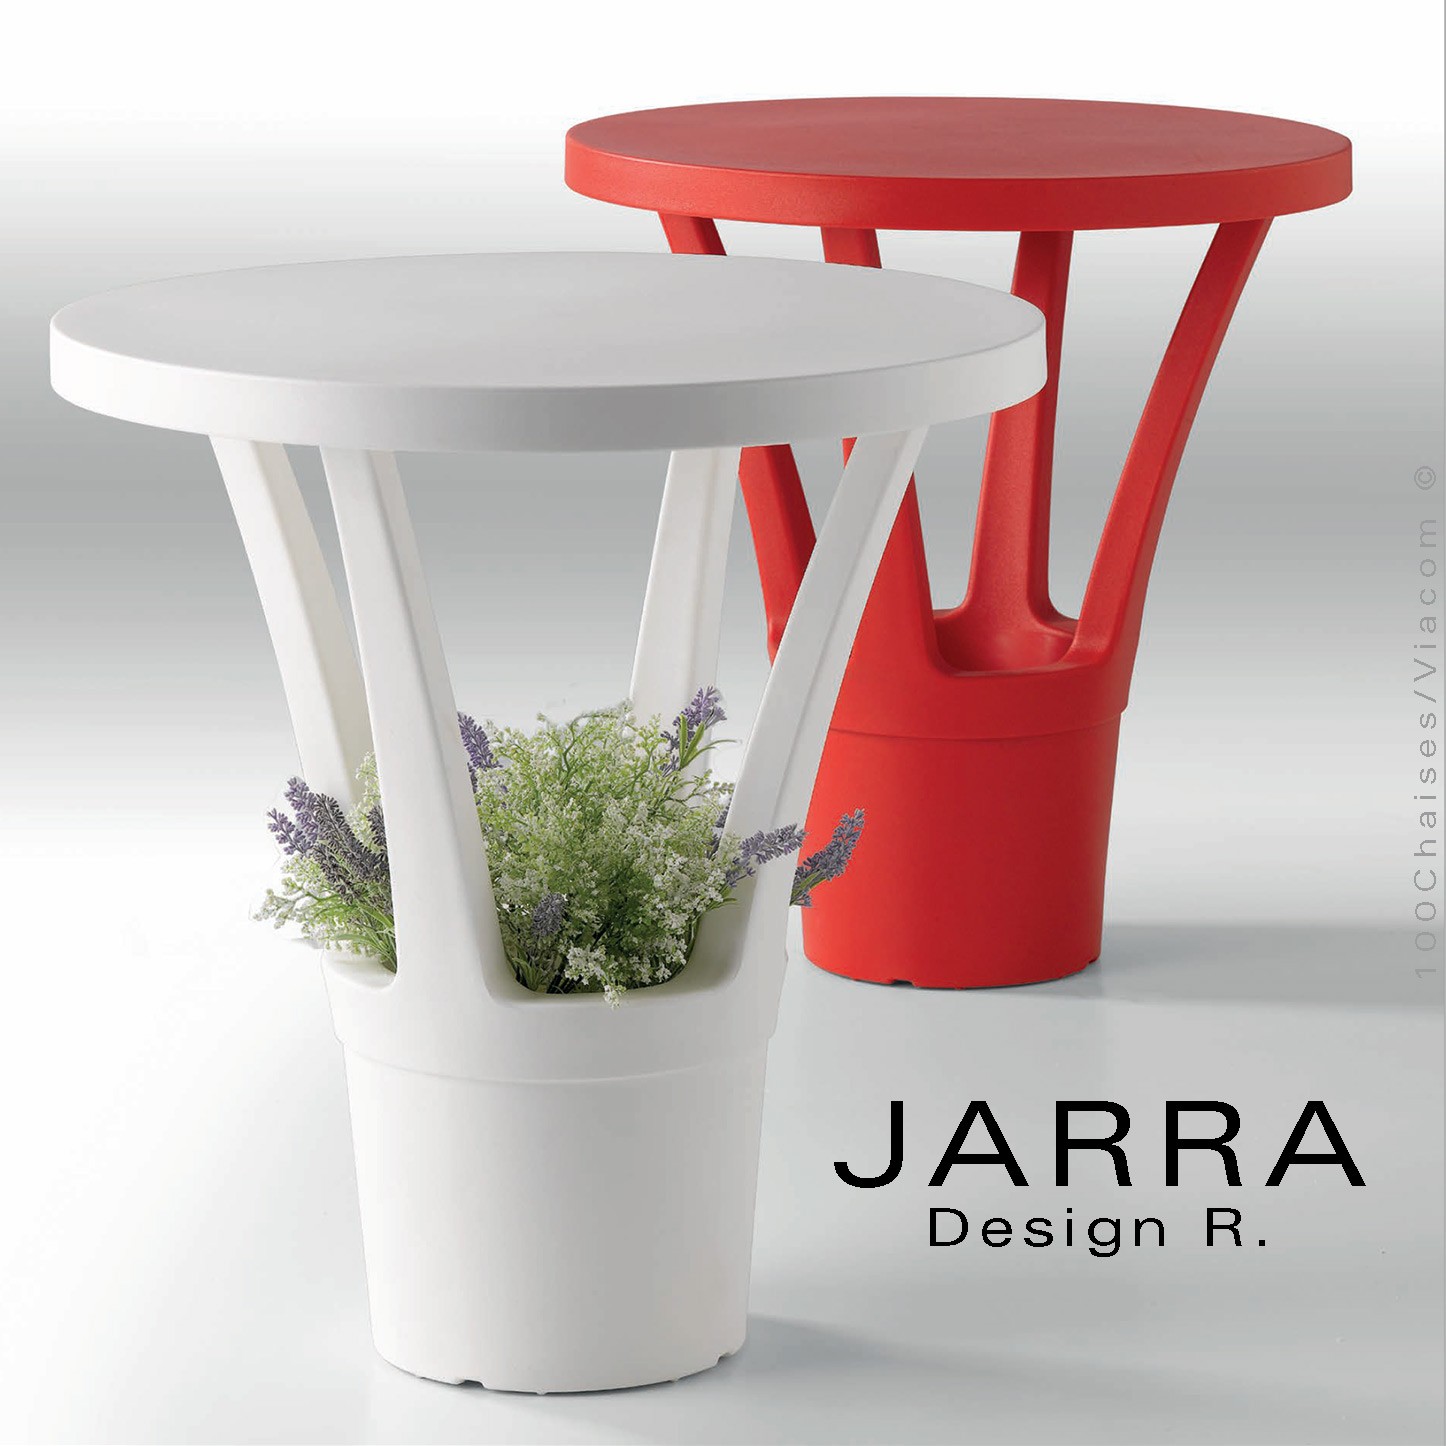 Petite table d'appoint ronde JARRA, pour extérieur terrasse